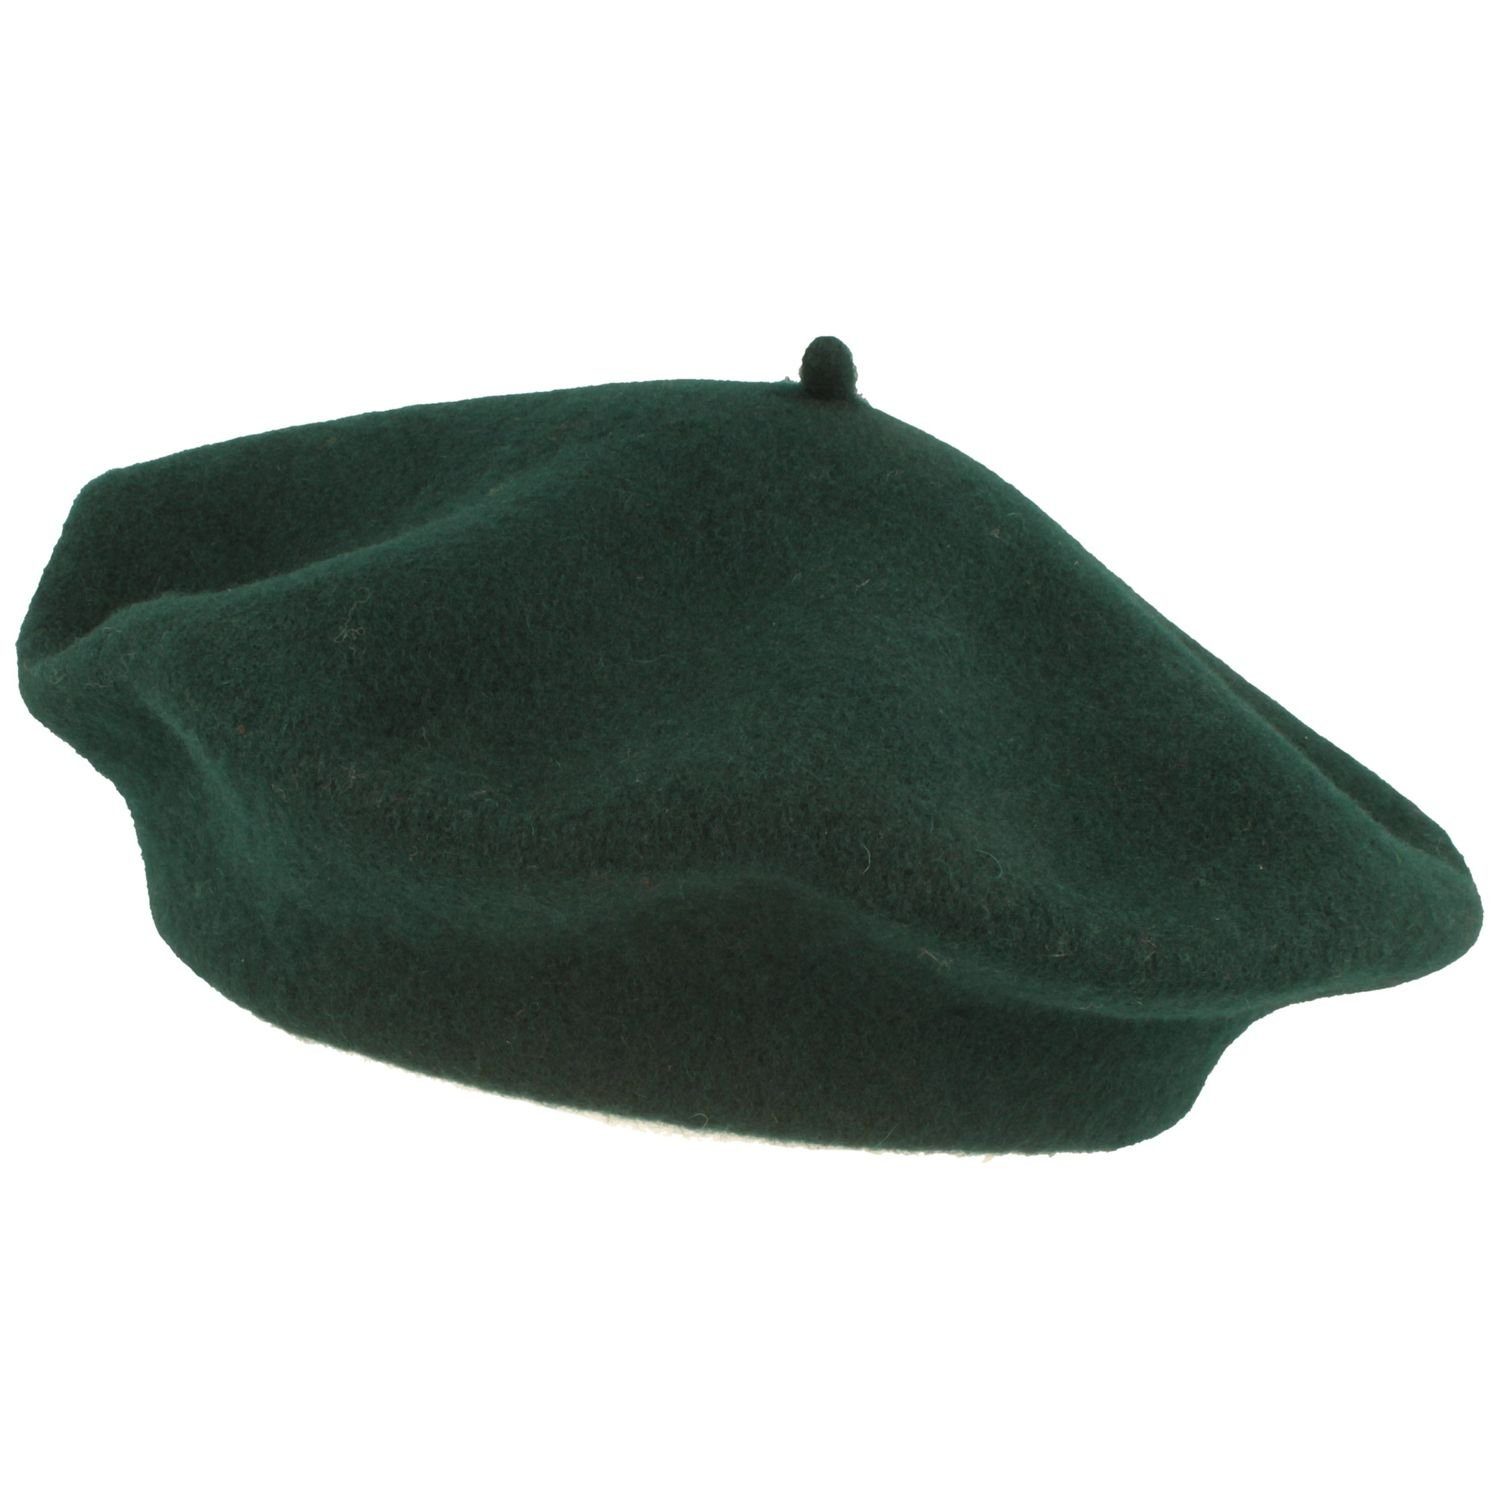 Kopka Baskenmütze klassisch aus 100% Schurwolle emerald